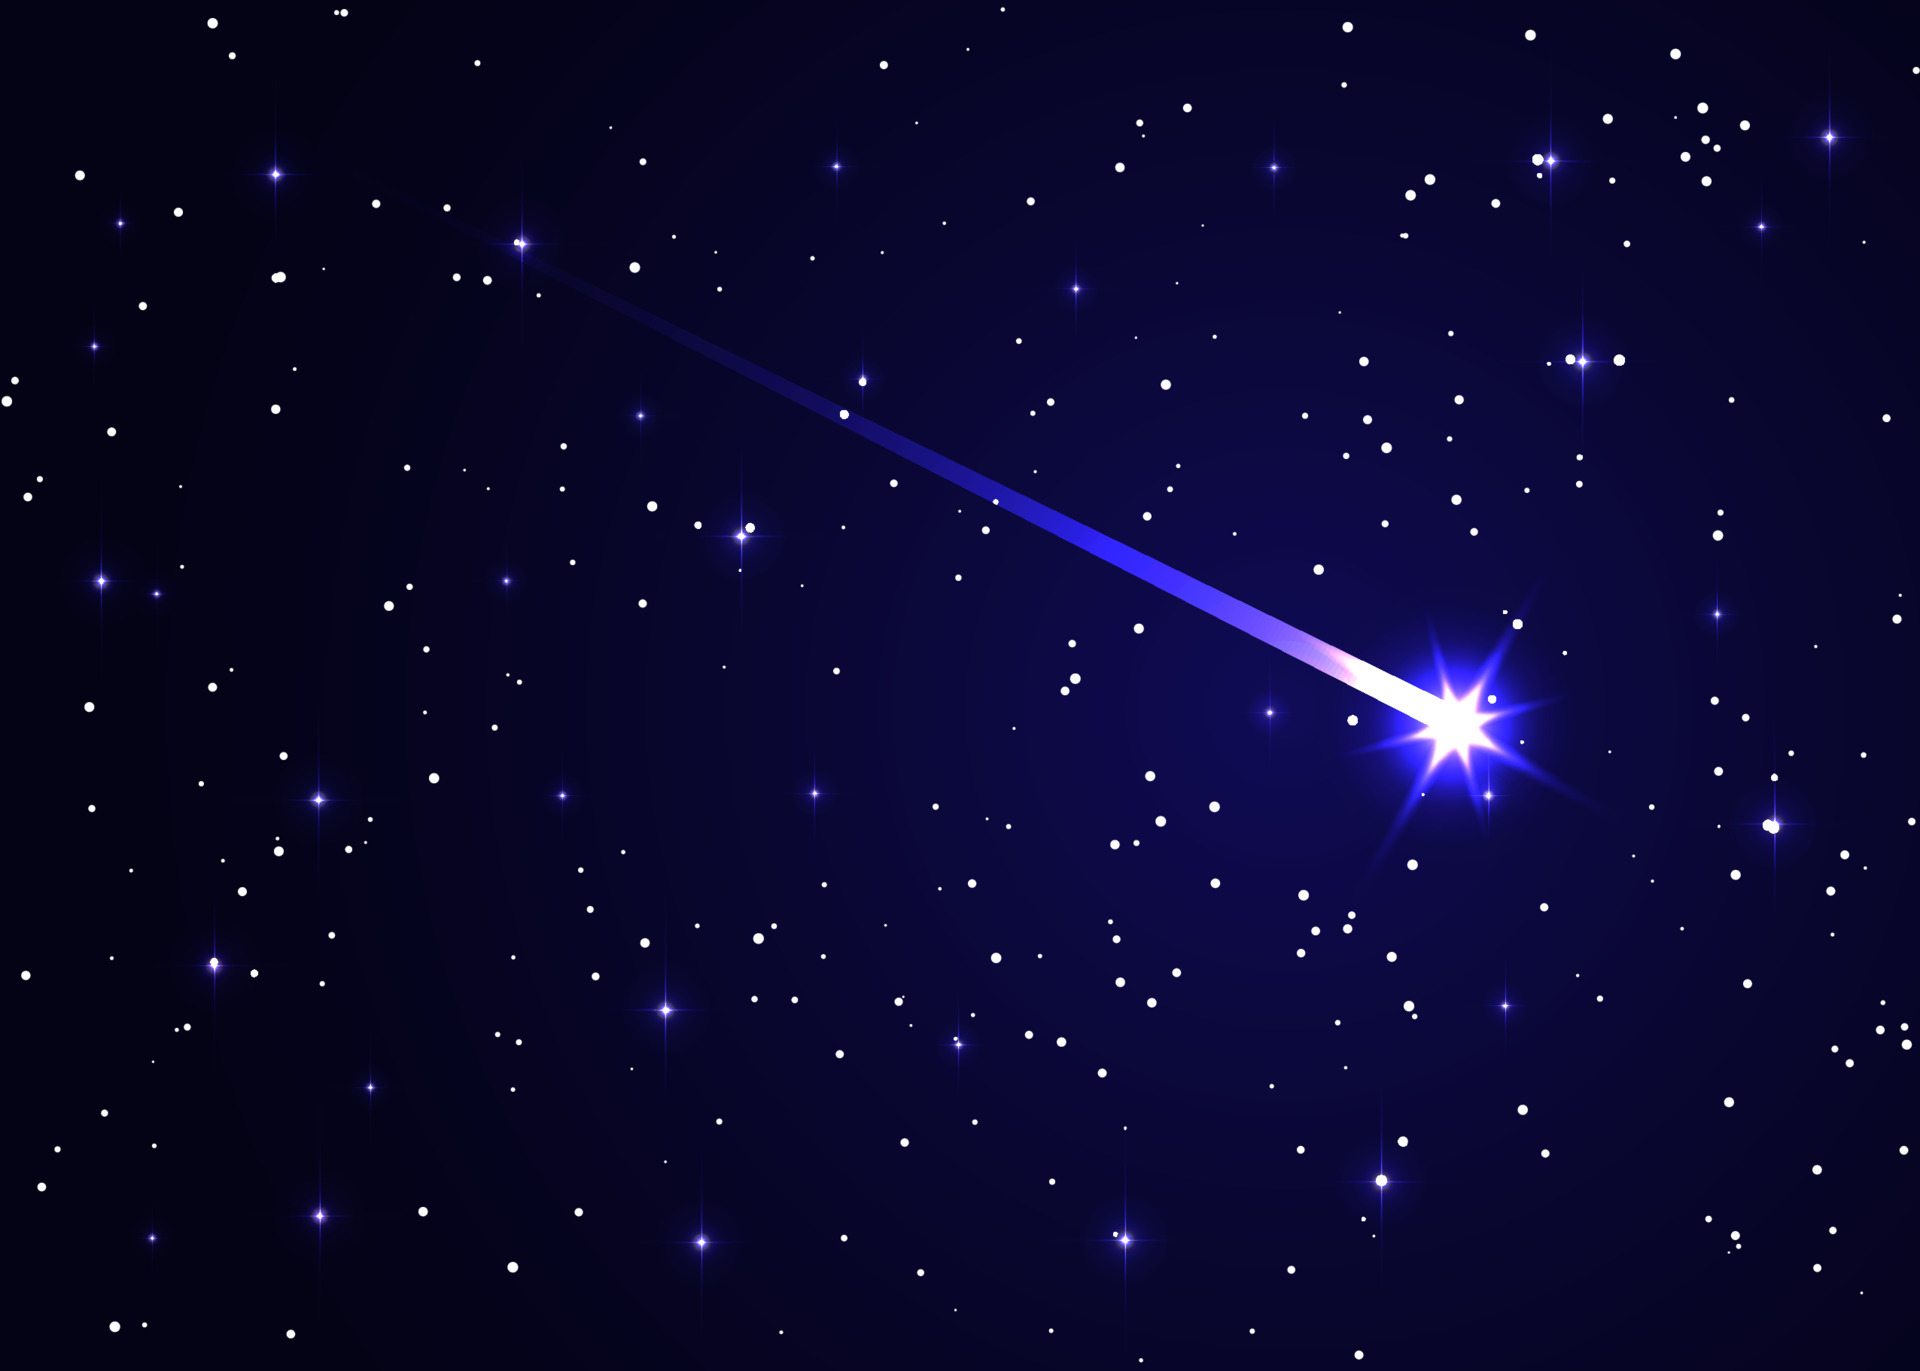 Sao chổi: Hơn bao giờ hết, bạn sẽ phải ngạc nhiên trước sự đẹp đẽ của một sao chổi. Nếu bạn chưa từng thấy nó trước đây, hãy dành thời gian để chiêm ngưỡng ngay bức ảnh này. Bạn sẽ cảm thấy như đang đi du hành vượt thời gian qua những ngôi sao đầy ma lực.